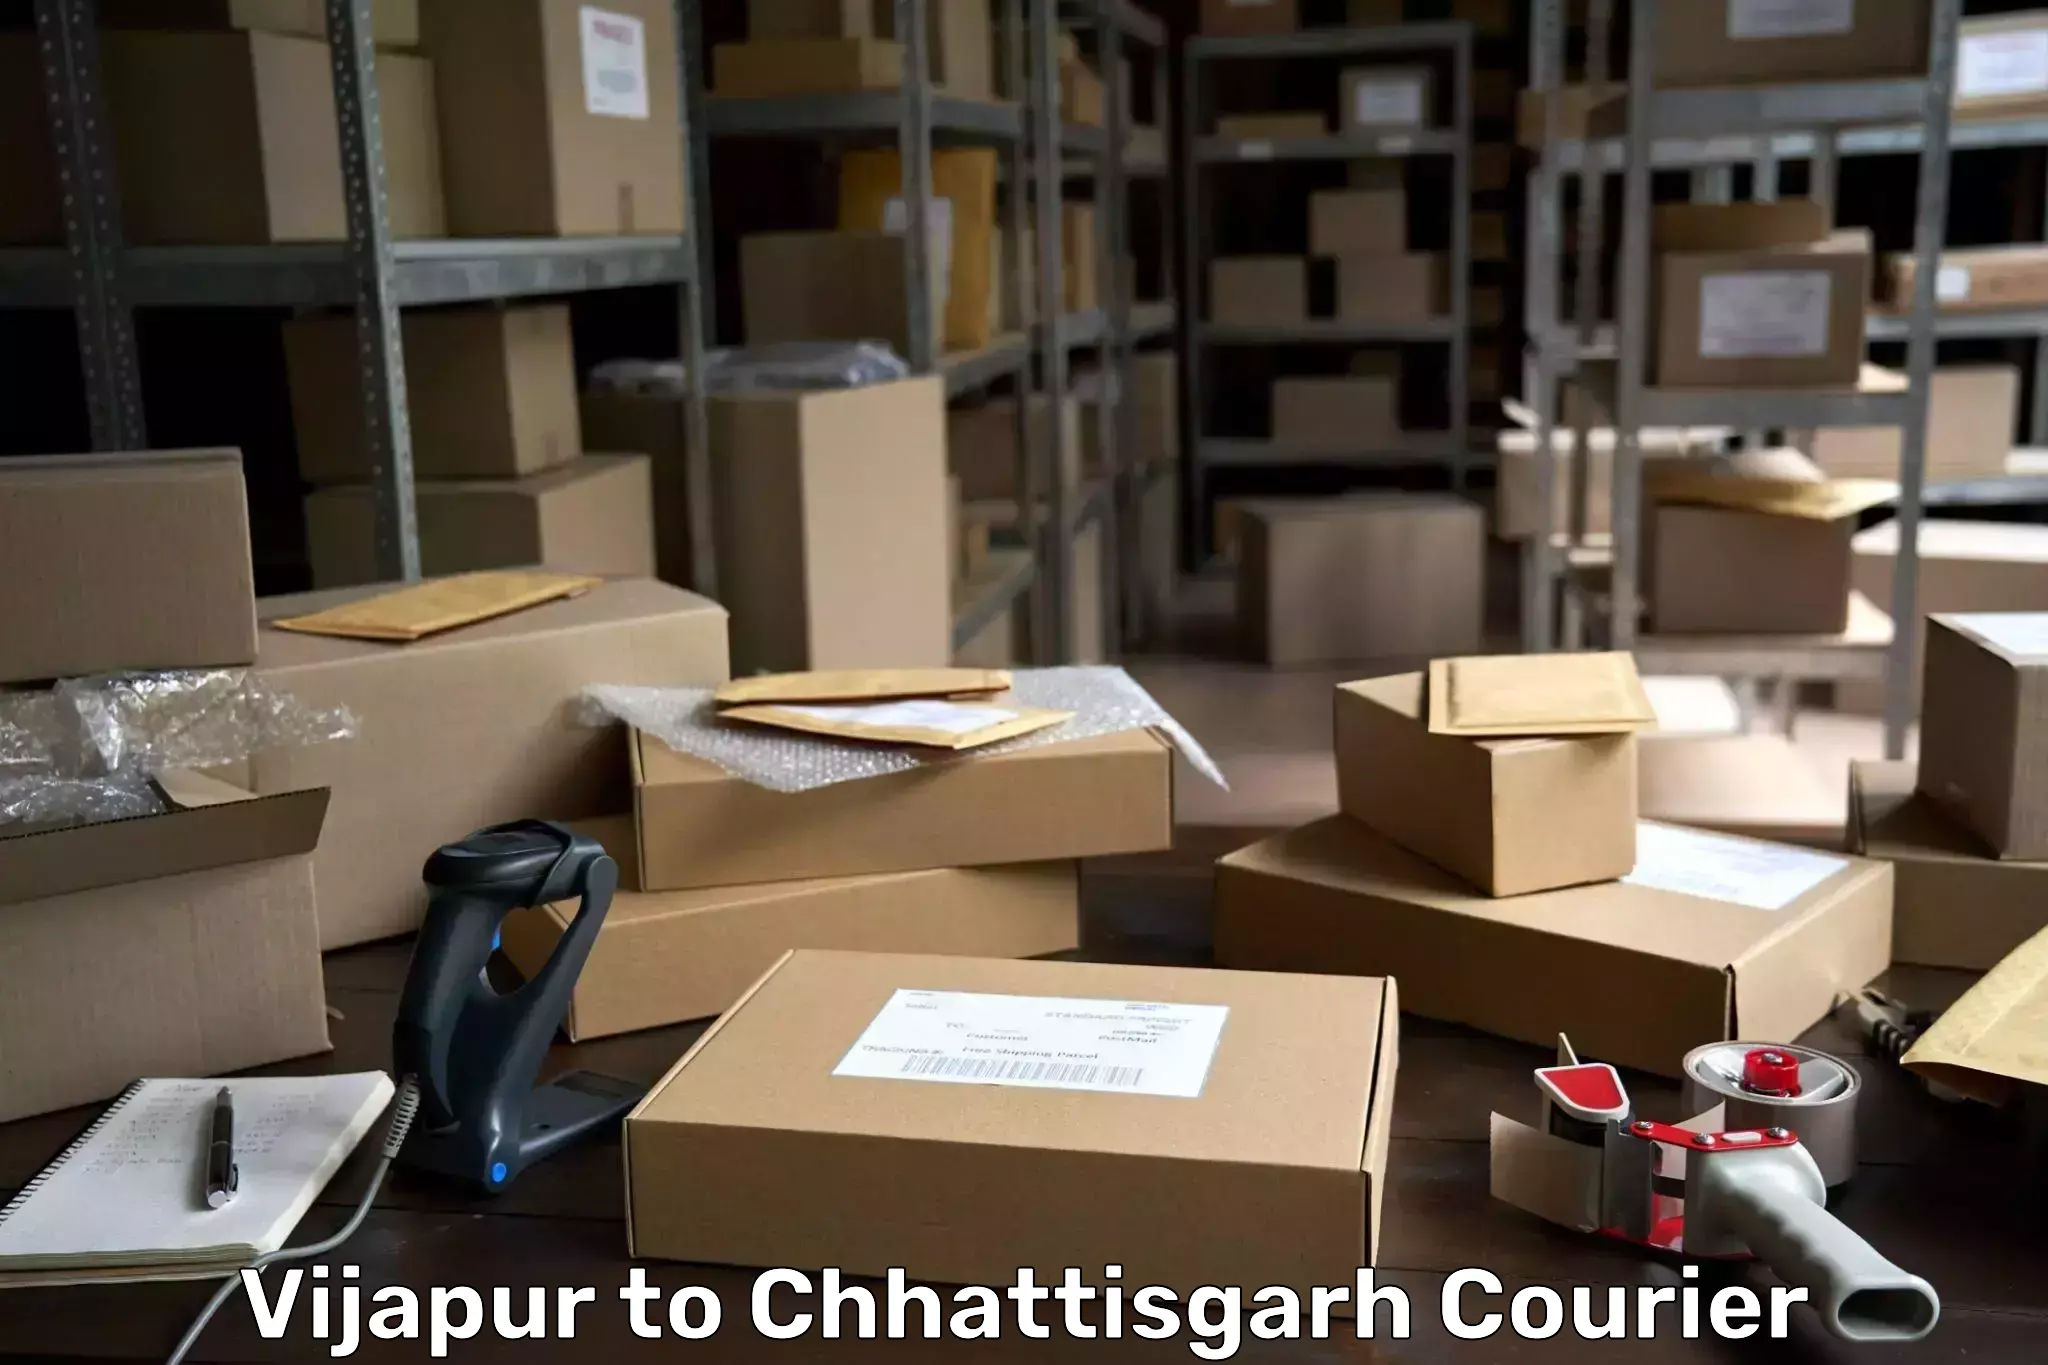 Personal parcel delivery Vijapur to Chhattisgarh